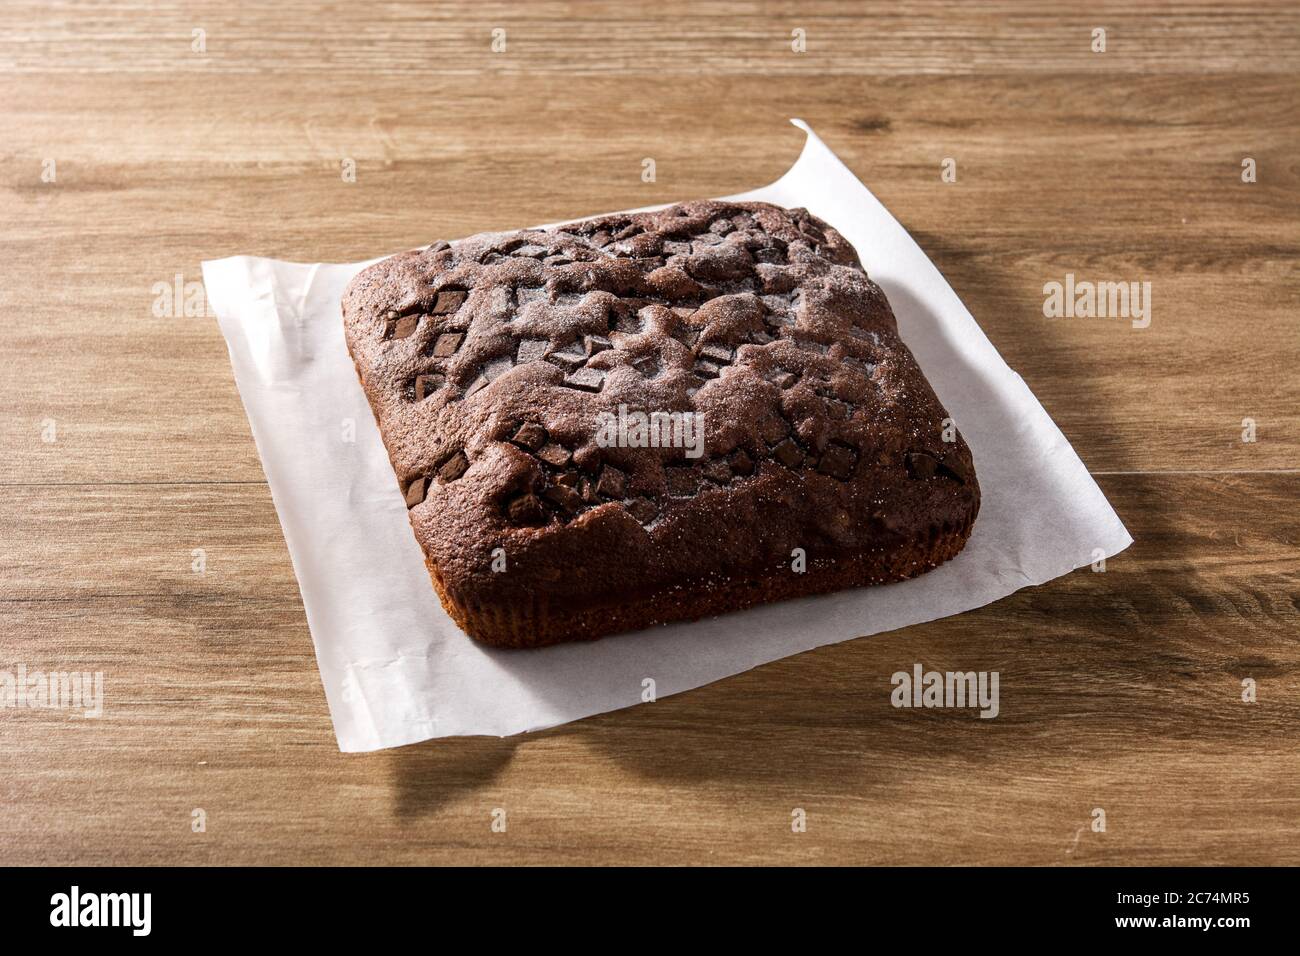 Gâteau éponge au chocolat sur table en bois Banque D'Images